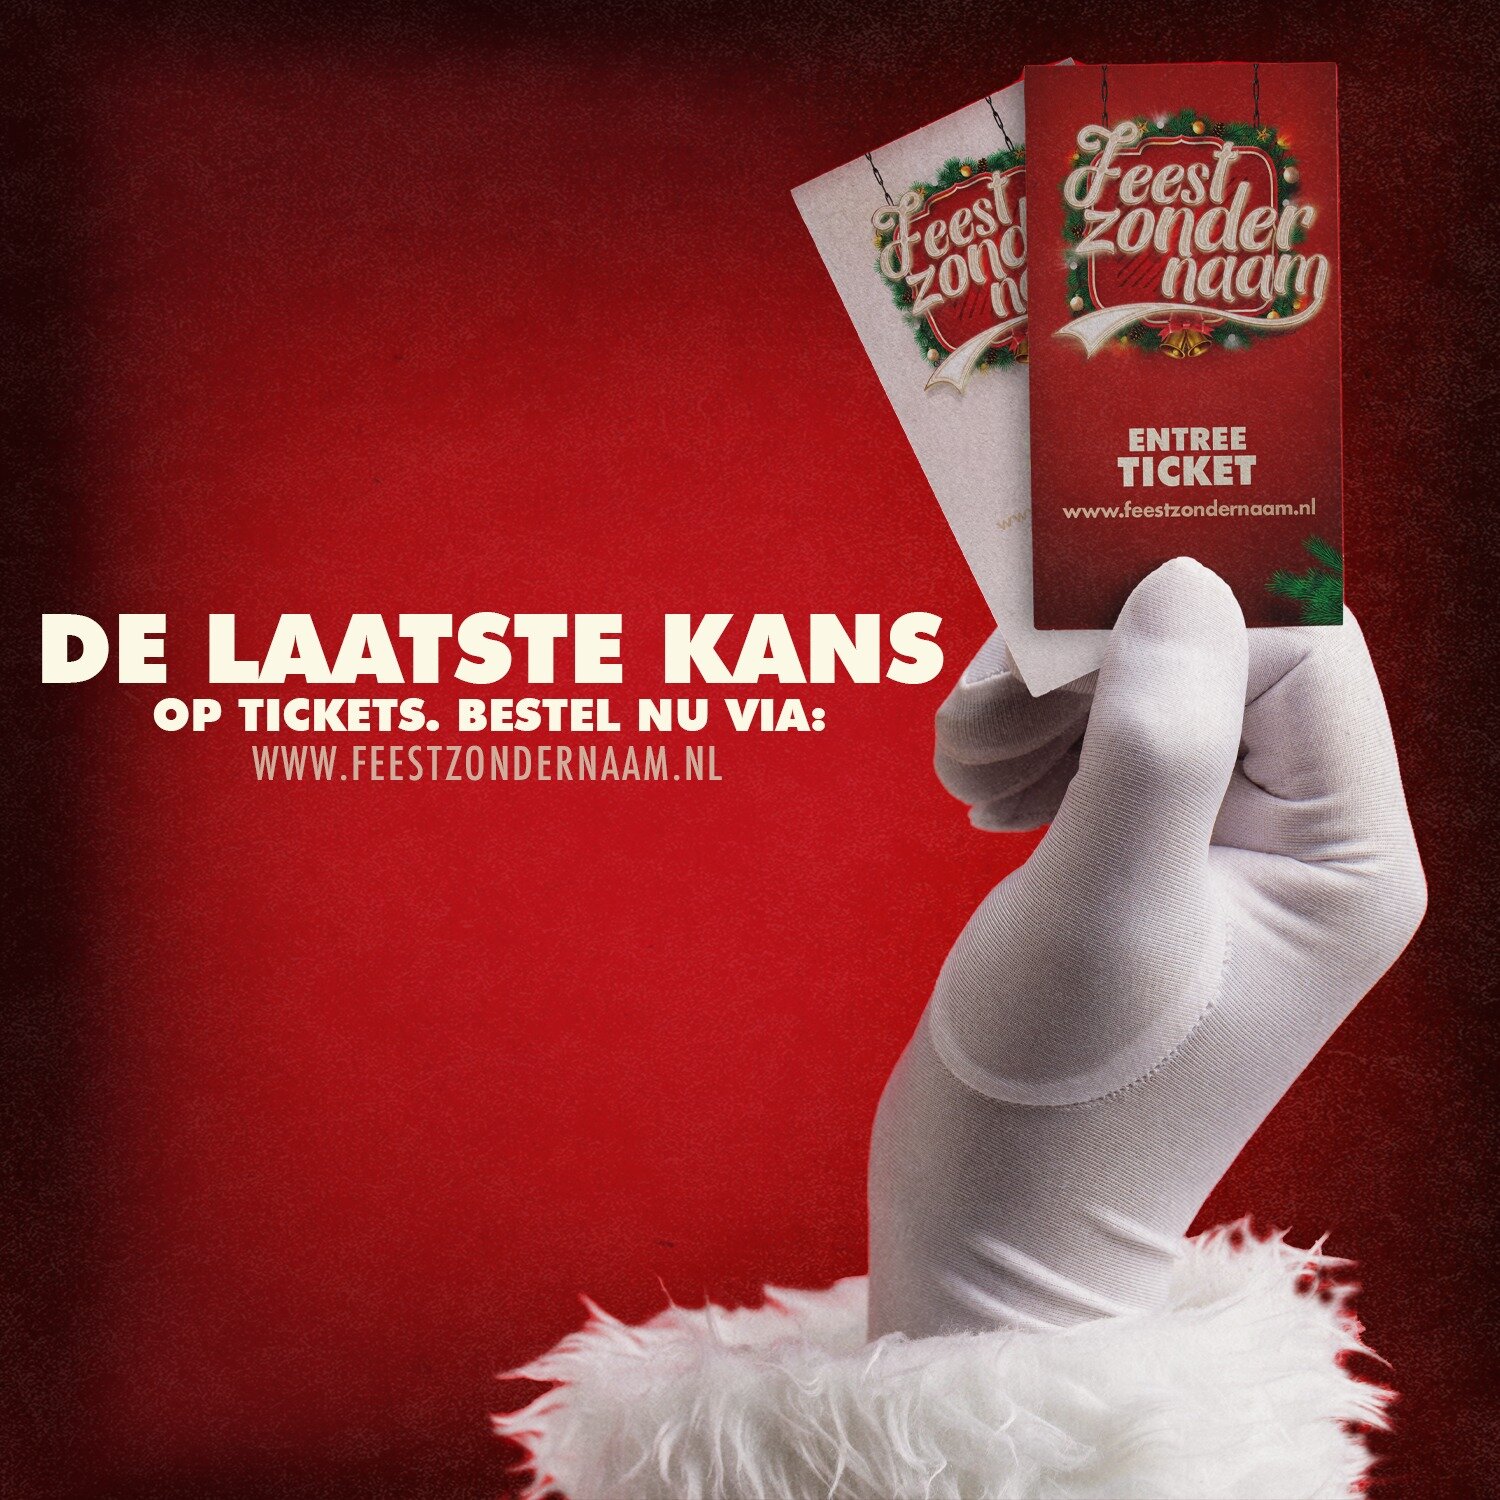 𝗟𝗮𝗮𝘁𝘀𝘁𝗲 𝗸𝗮𝗻𝘀 🆘

Vandaag is de dag! Het grootste Kerstfeest van het Westland zal vanavond losbarsten. Haal snel en gemakkelijk jouw tickets op www.feestzondernaam.nl 🎟️